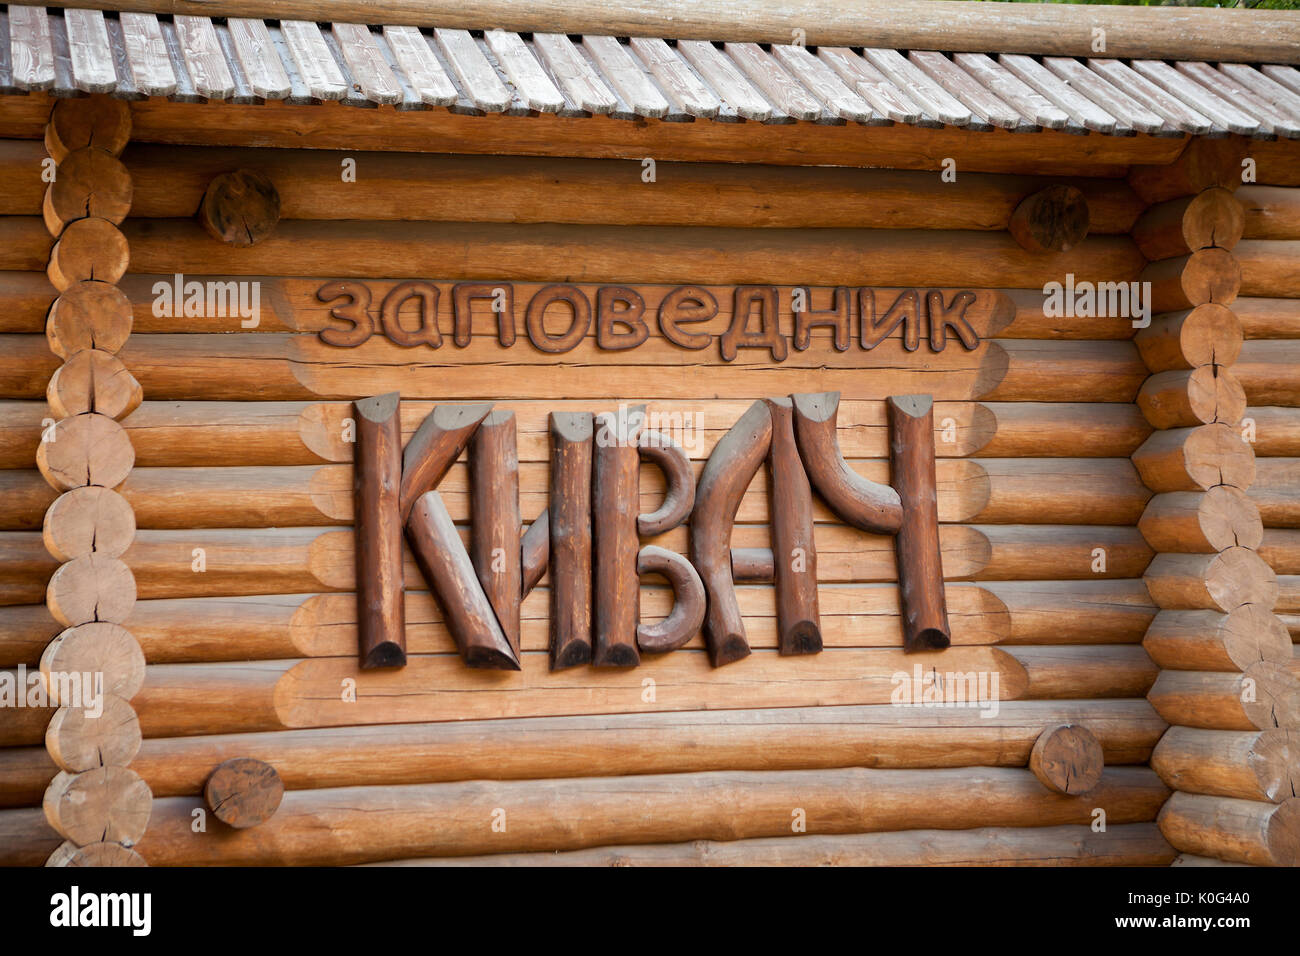 KIVACH, Carelia, Russia - CIRCA JUN, 2017: La lapide in russo: Kivach Riserva Naturale. Lettere di legno sono su log. Cartello è sull'ingresso Foto Stock